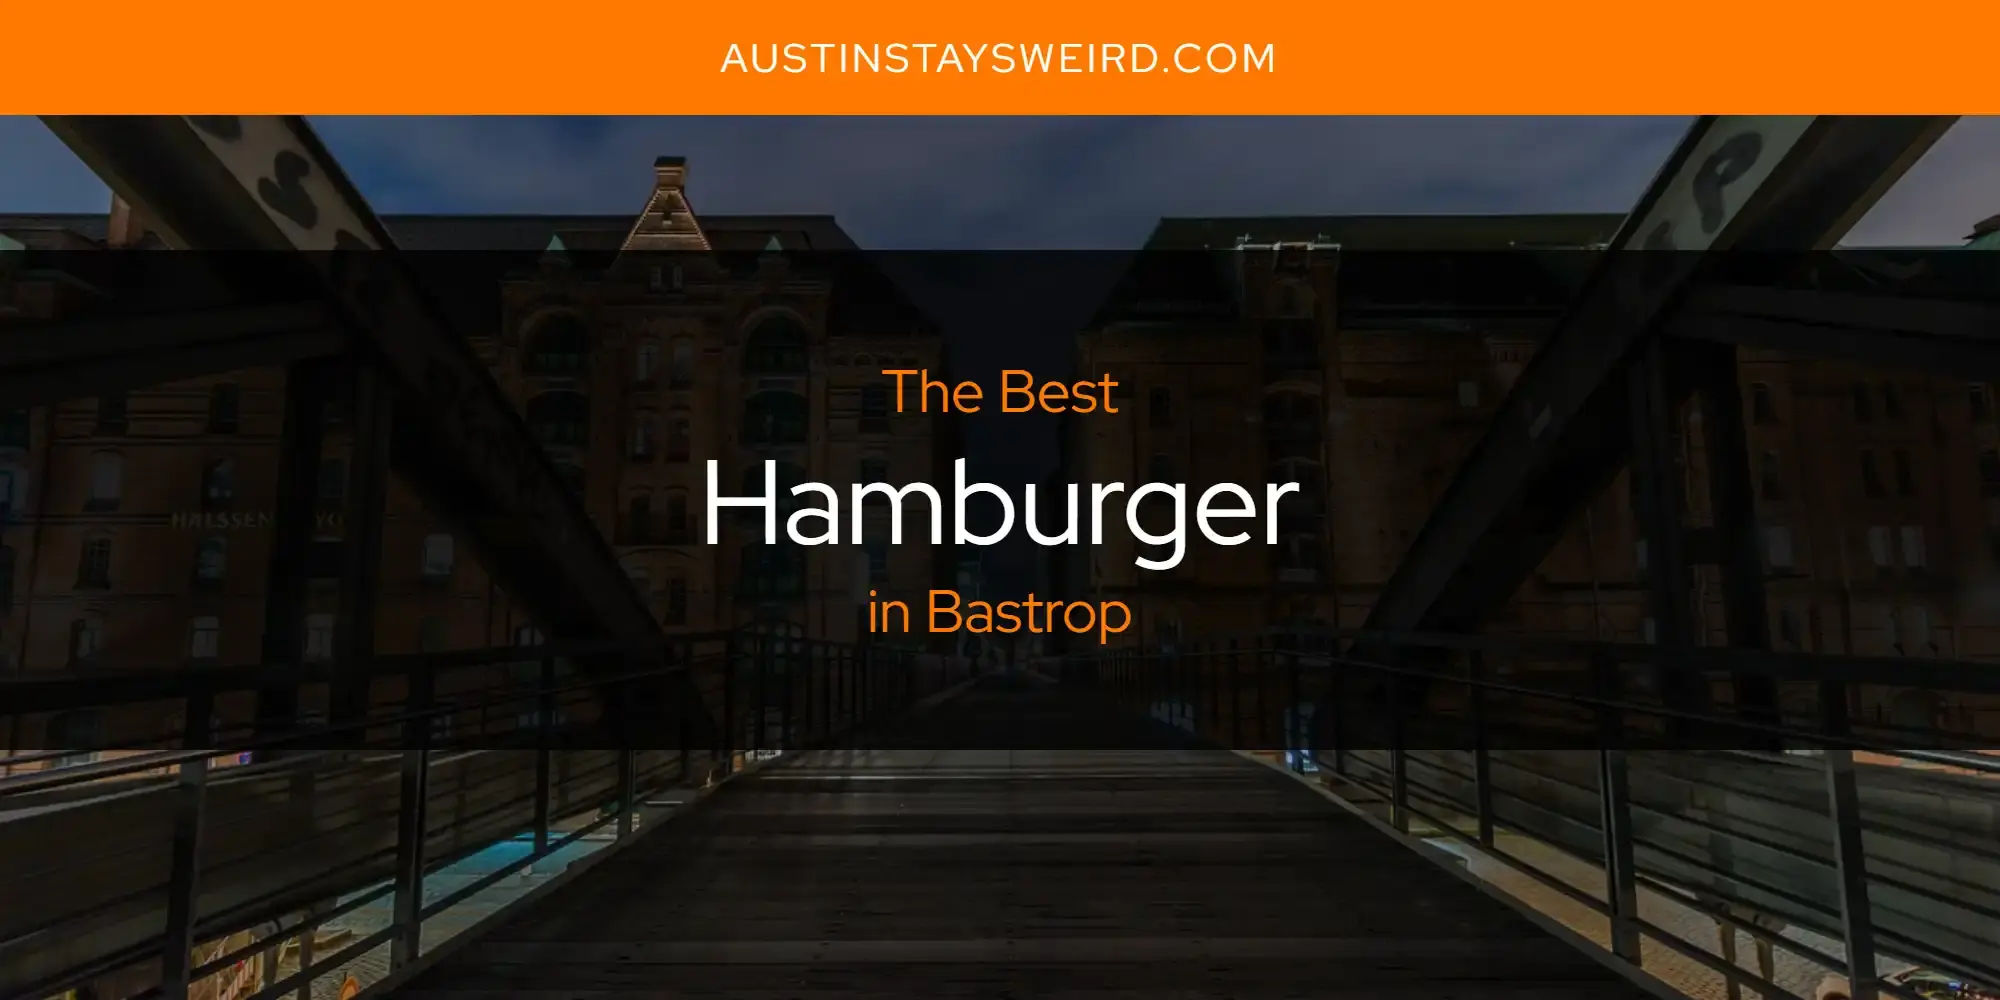 Best Hamburger in Bastrop? Here's the Top 8